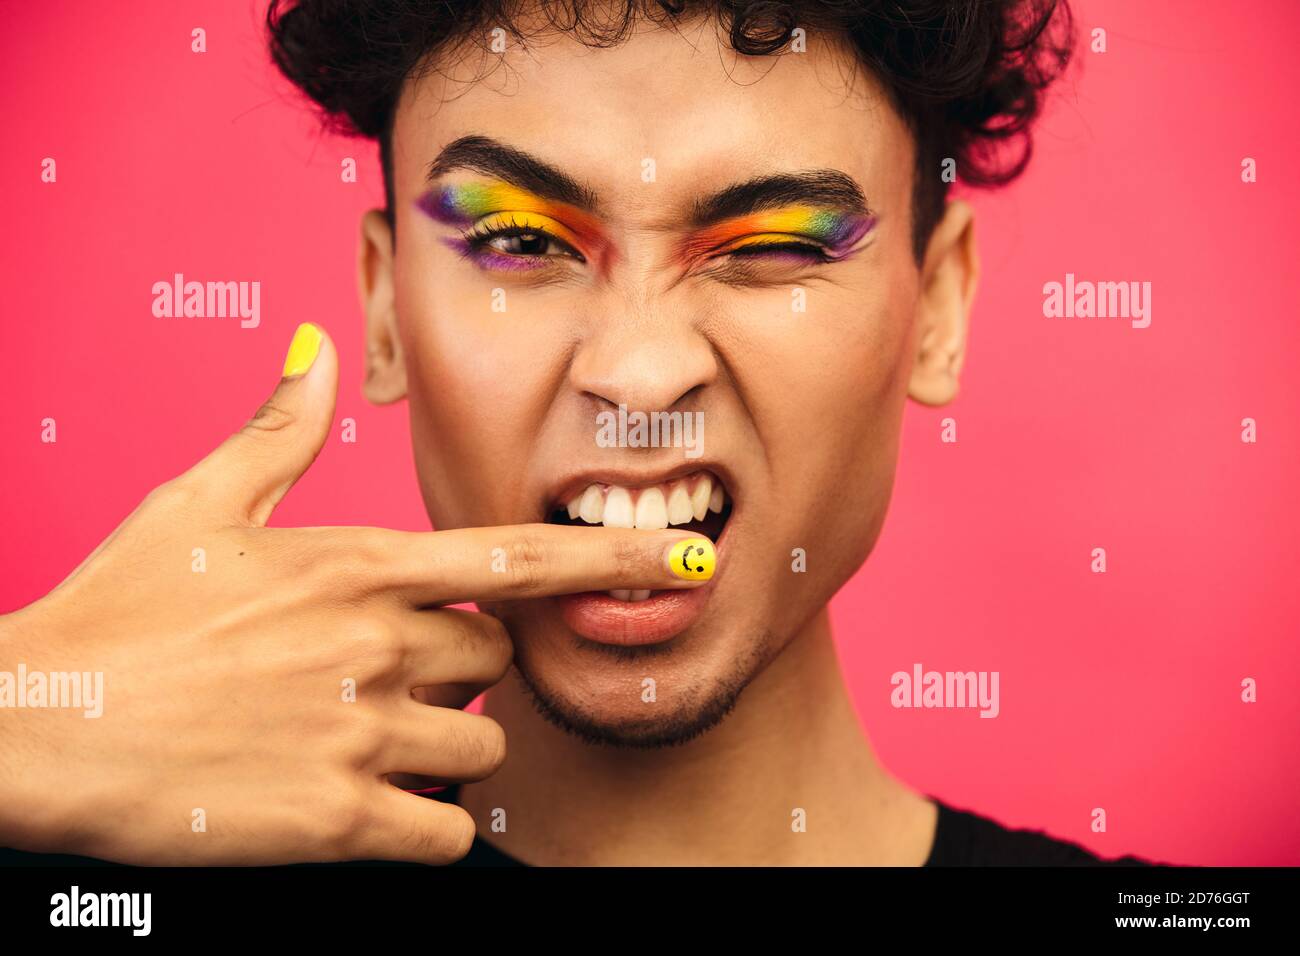 Primo piano di un uomo transgender che gli mordicca il dito e gli inzidisce un occhio. Uomo fluido di genere che indossa arcobaleno colorato occhio ombra e sorridente viso unghie. Foto Stock